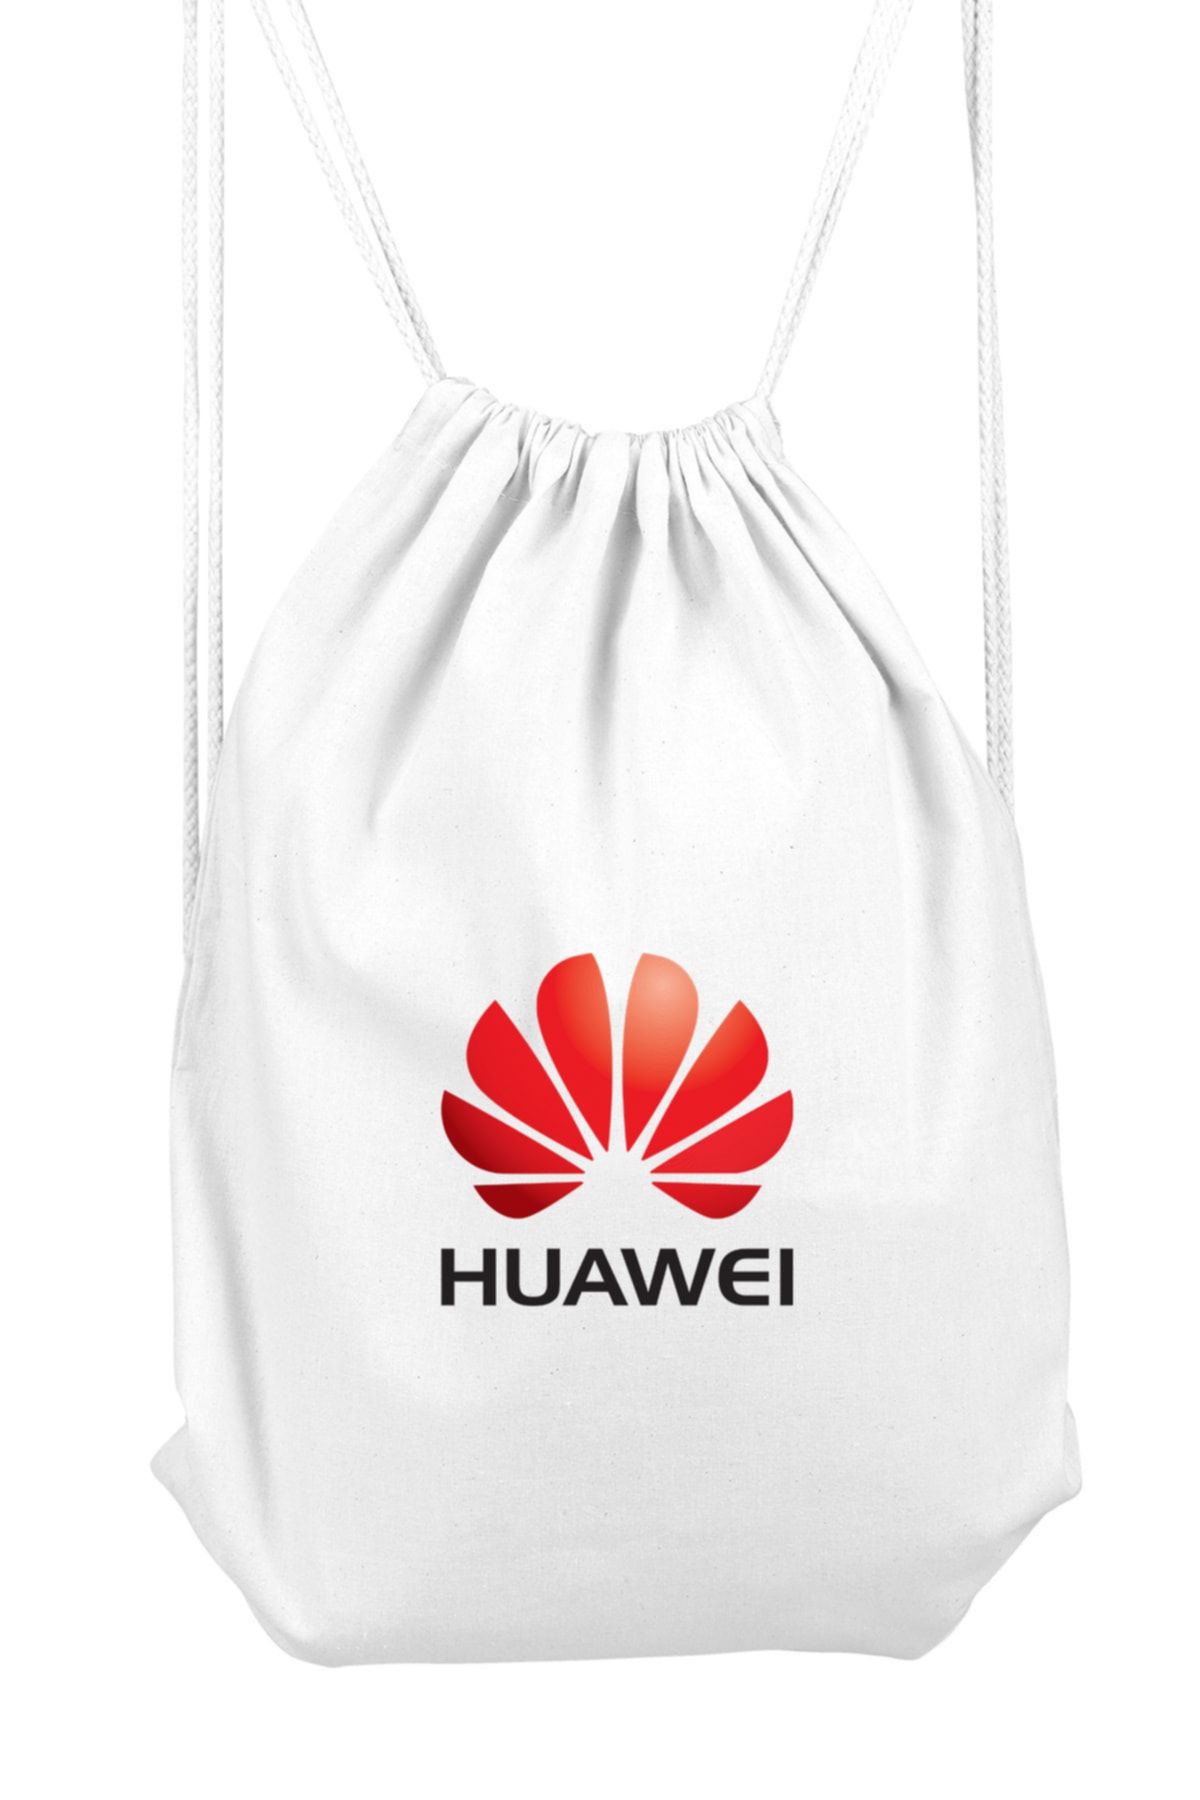 Genel Markalar Huawei Logo Spor Sırt Çantası 36x50 Cm Bll396